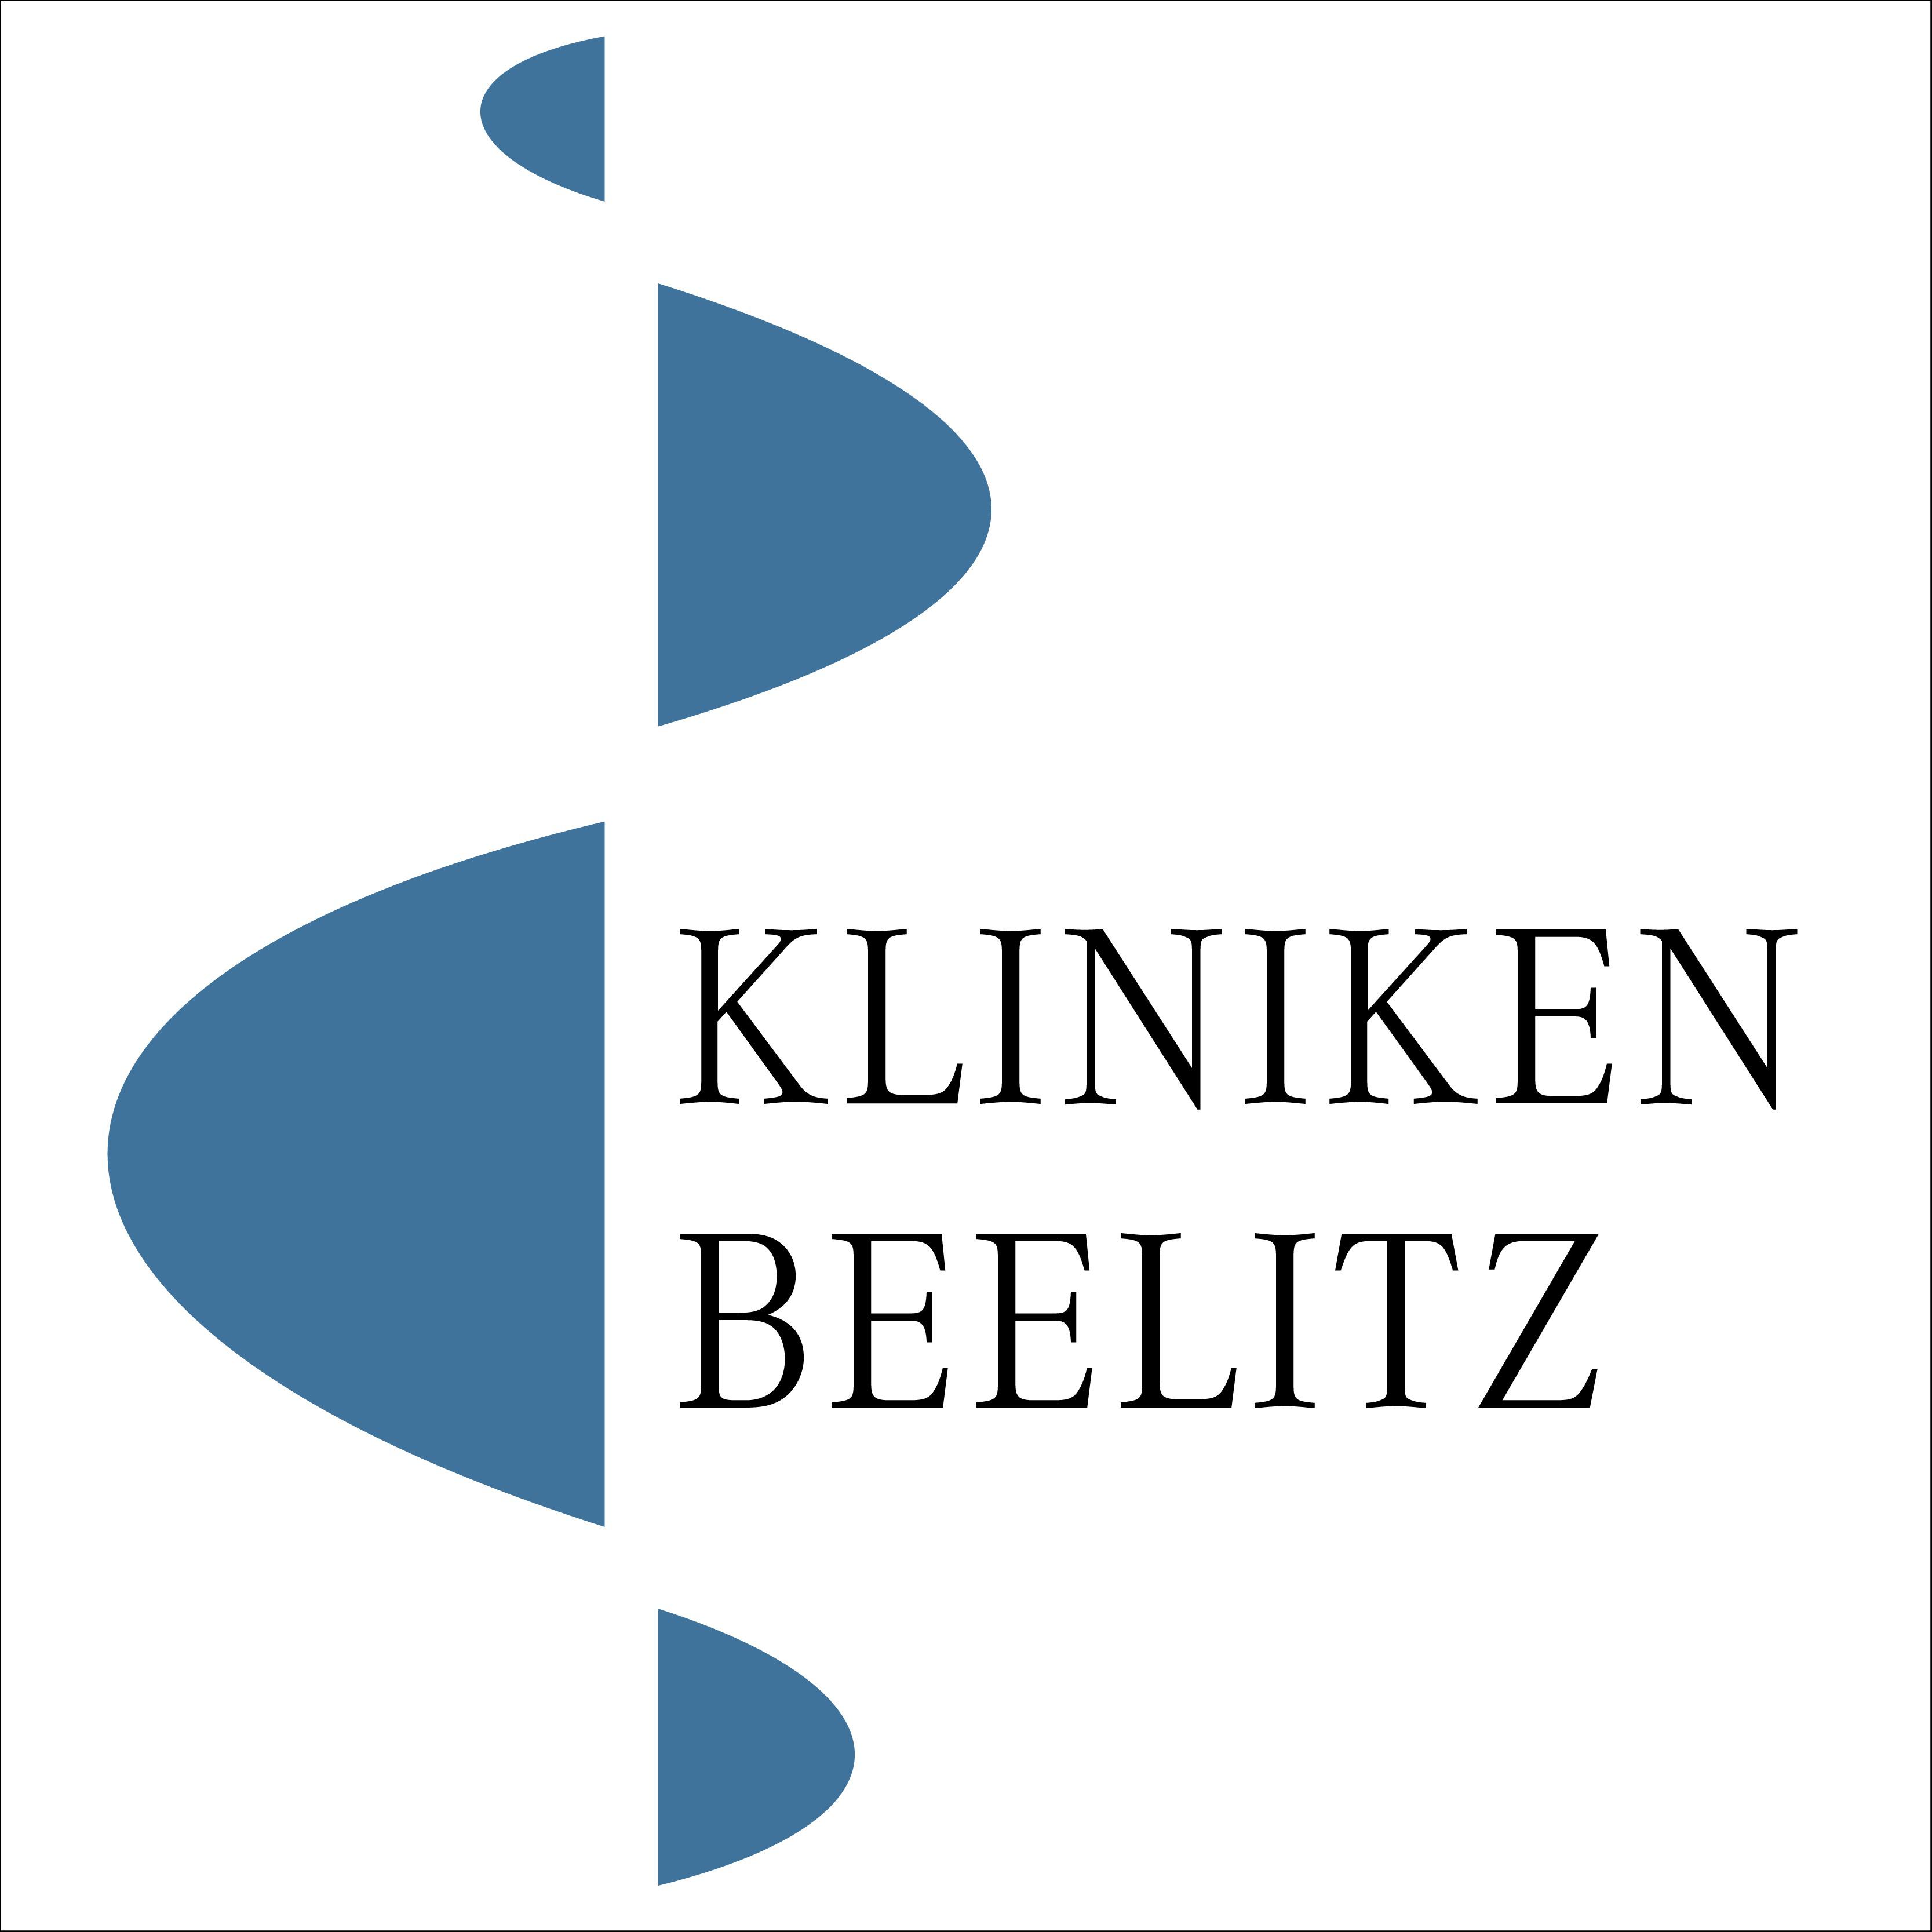 Neurologisches Fachkrankenhaus für Bewegungsstörungen / Parkinson in Heilstätten Stadt Beelitz in der Mark - Logo